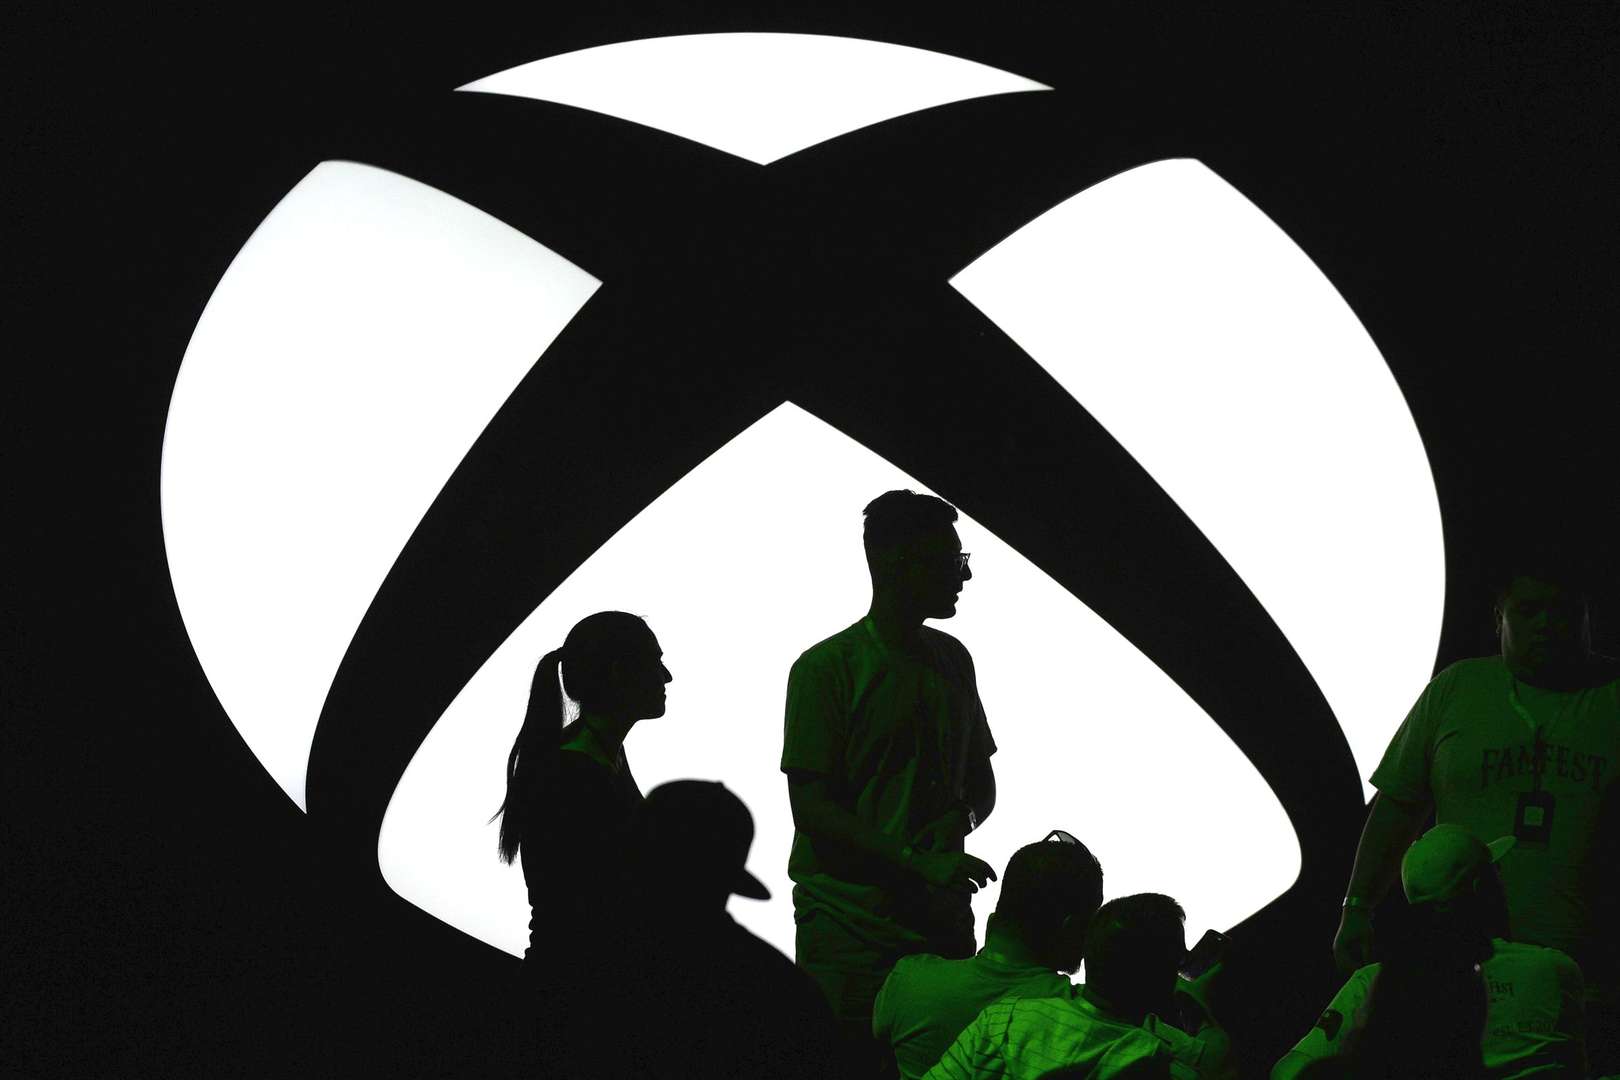 Microsoft impulsaría su metaverso tras la compra de Activision Blizzard